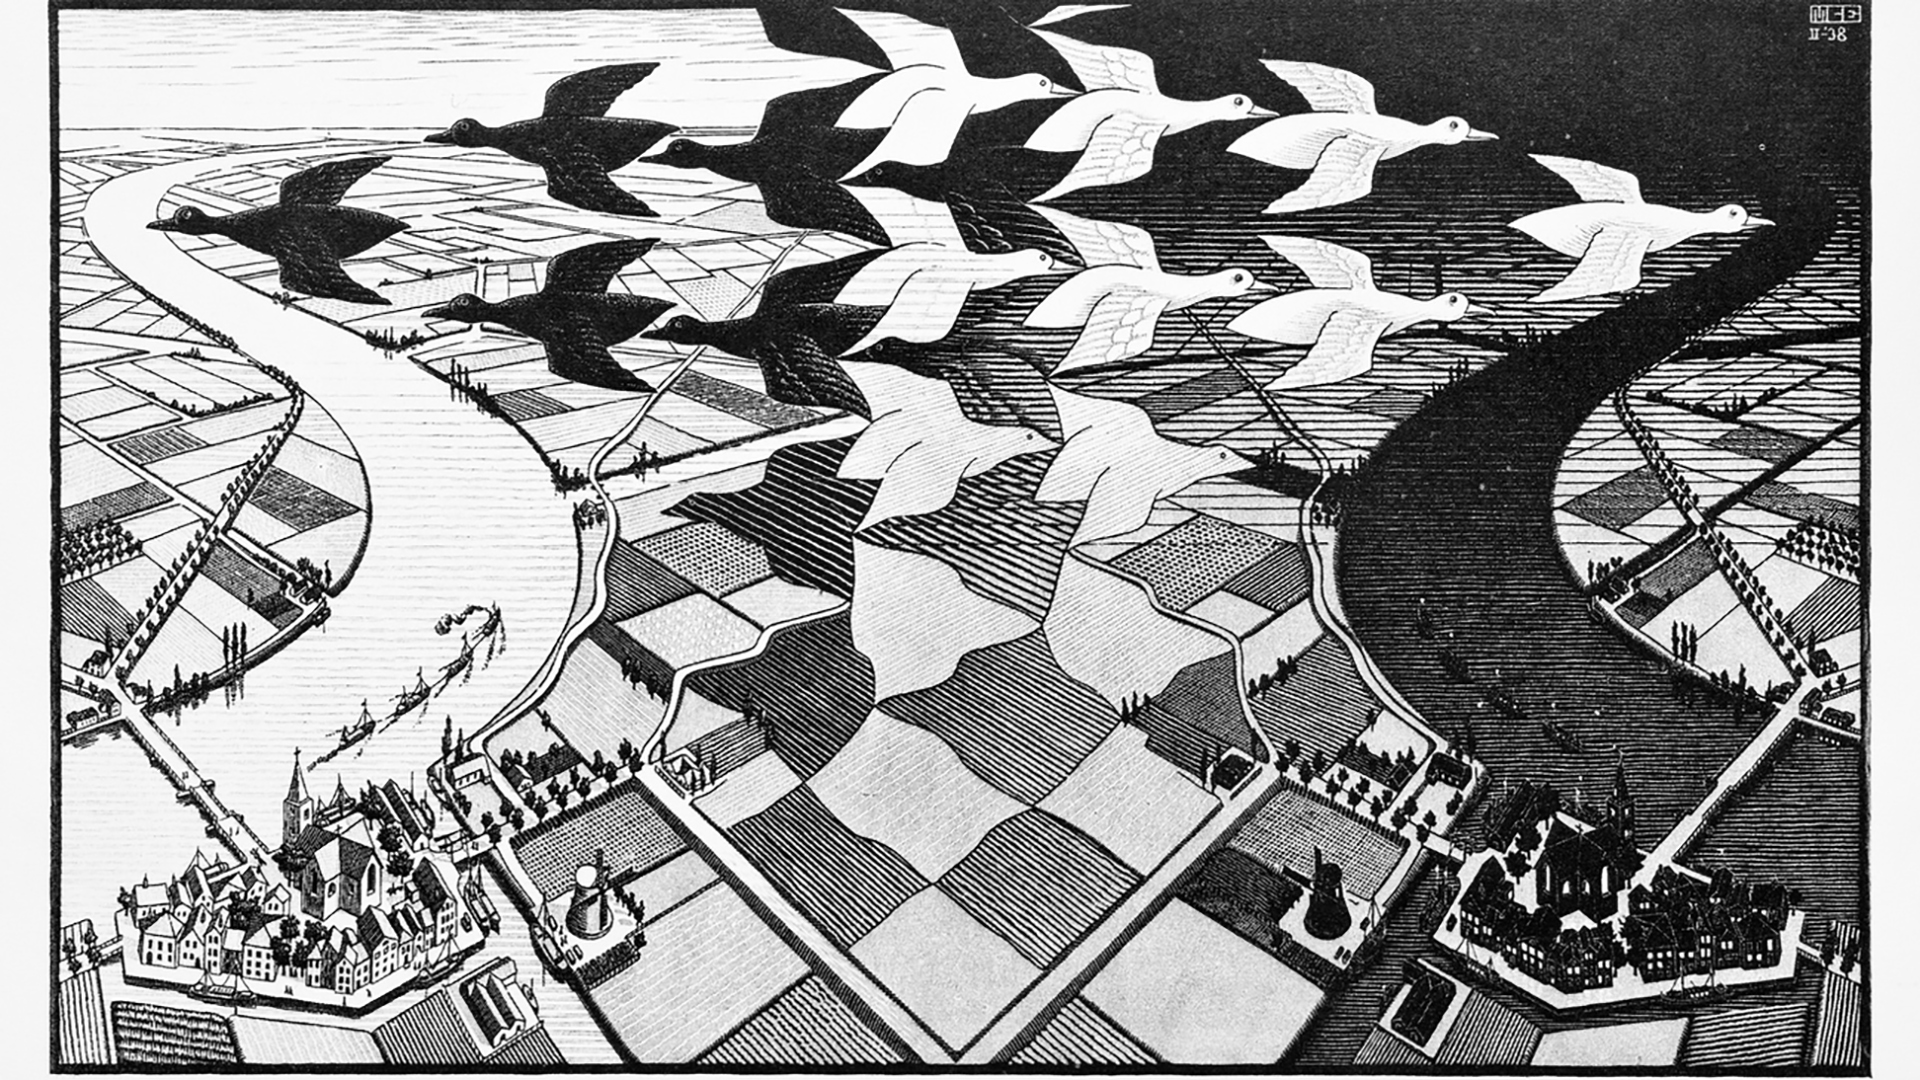 Unien tulkinta: Hollantilaisen Maurits C. Escherin taide oli usein lähtöisin unista ja unen logiikasta, jossa asiat muuttuvat liukuen toisiksi. Puupiirros Päivä ja yö on vuodelta 1938.